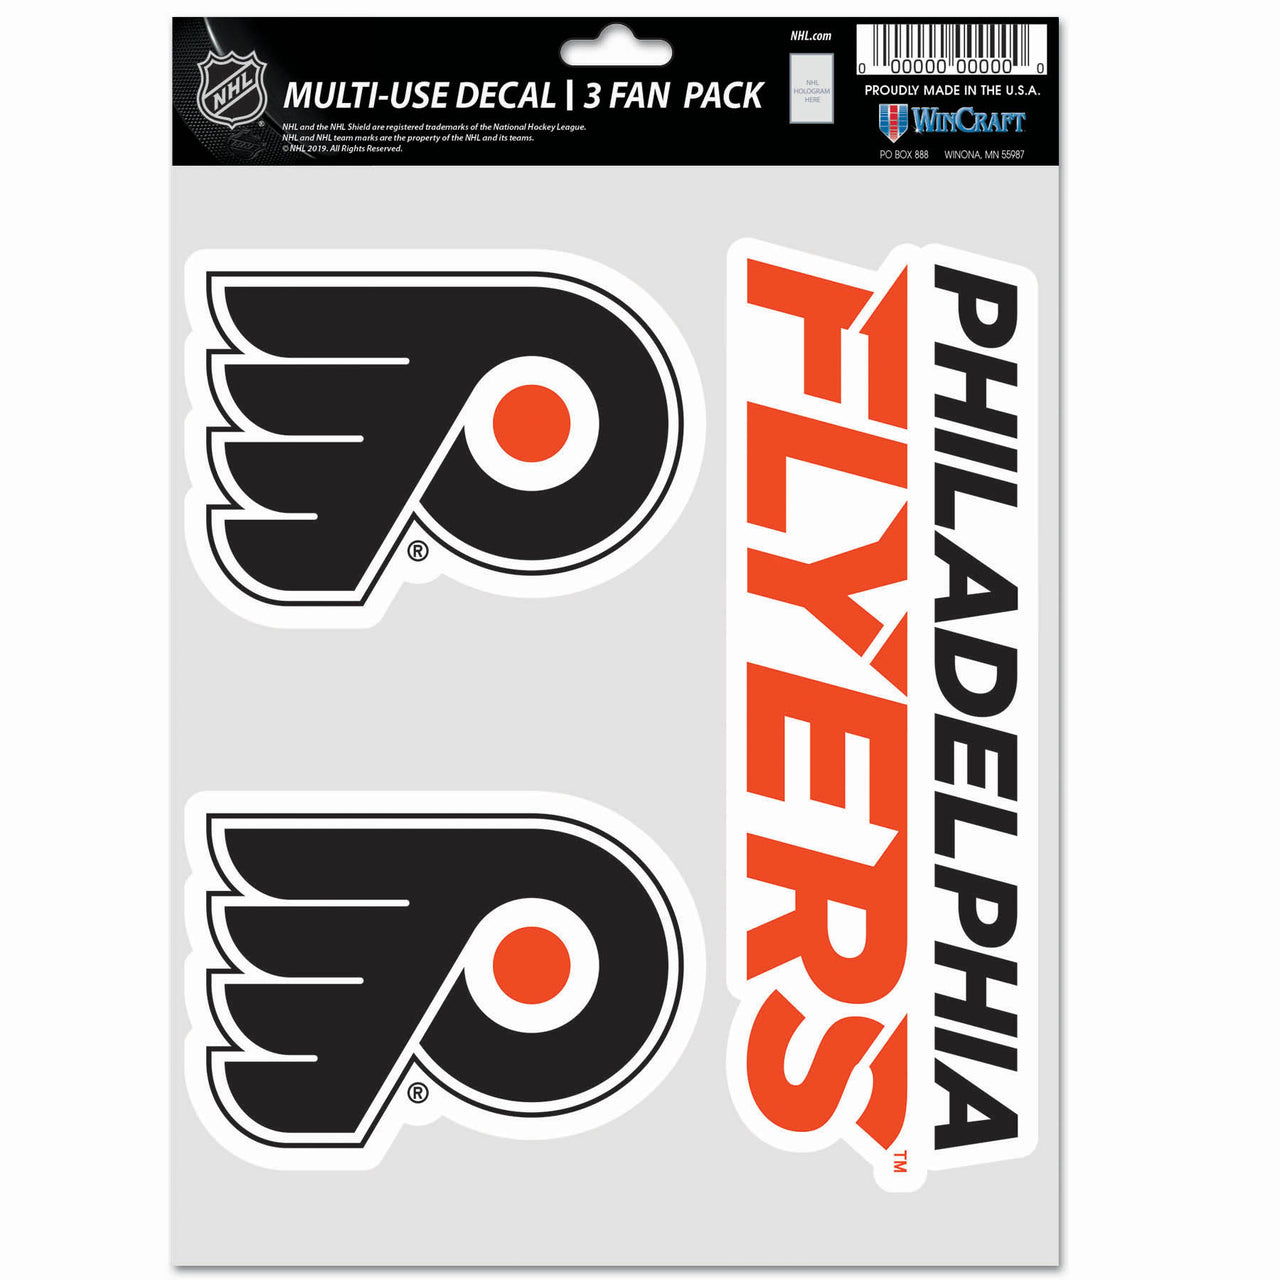 Gritty Philadelphia Flyers Scoreboard Bobblehead - Dynasty Sports